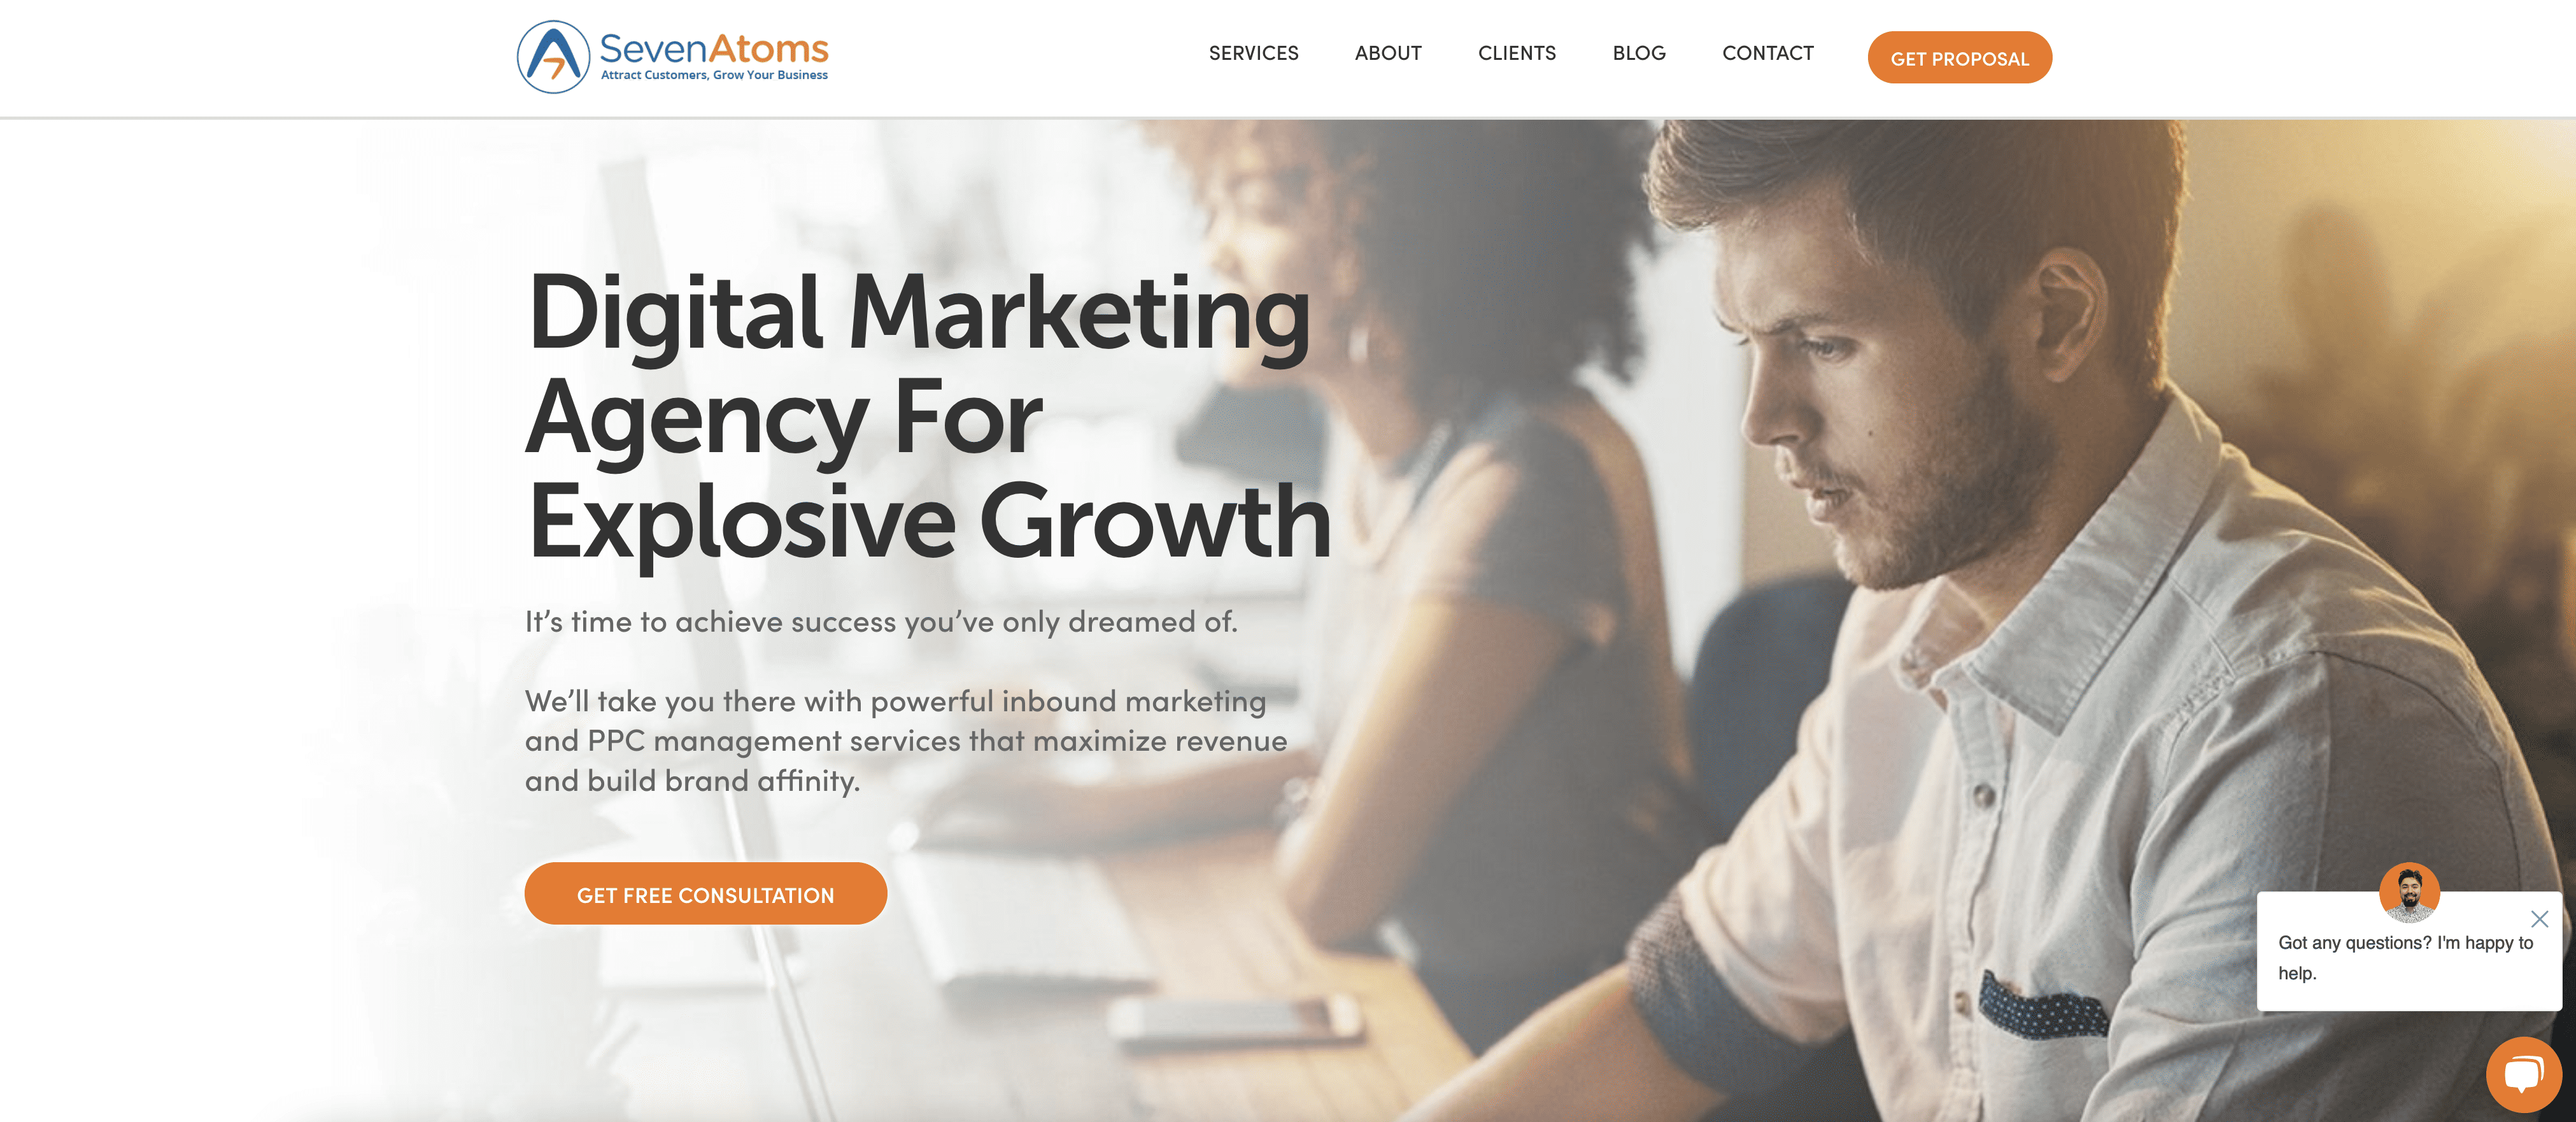 Image screenshot of SaaS marketing agency website